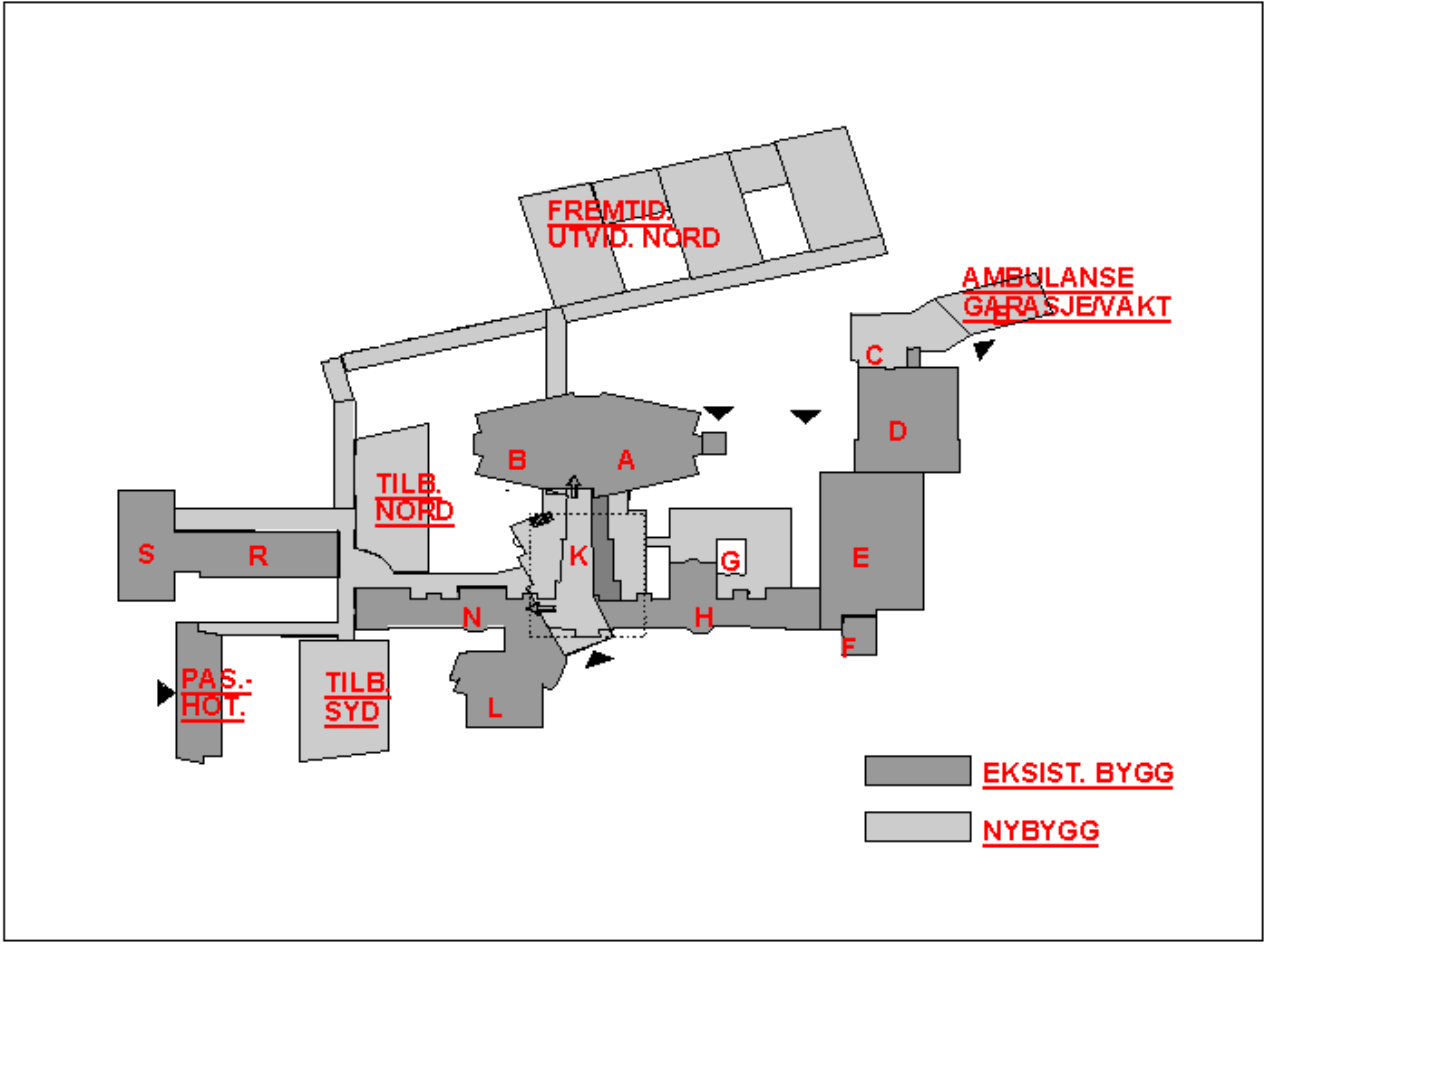 Figur 1: Oversikt over eksisterende bygg, nybygg og framtidige utvidelsesområder.